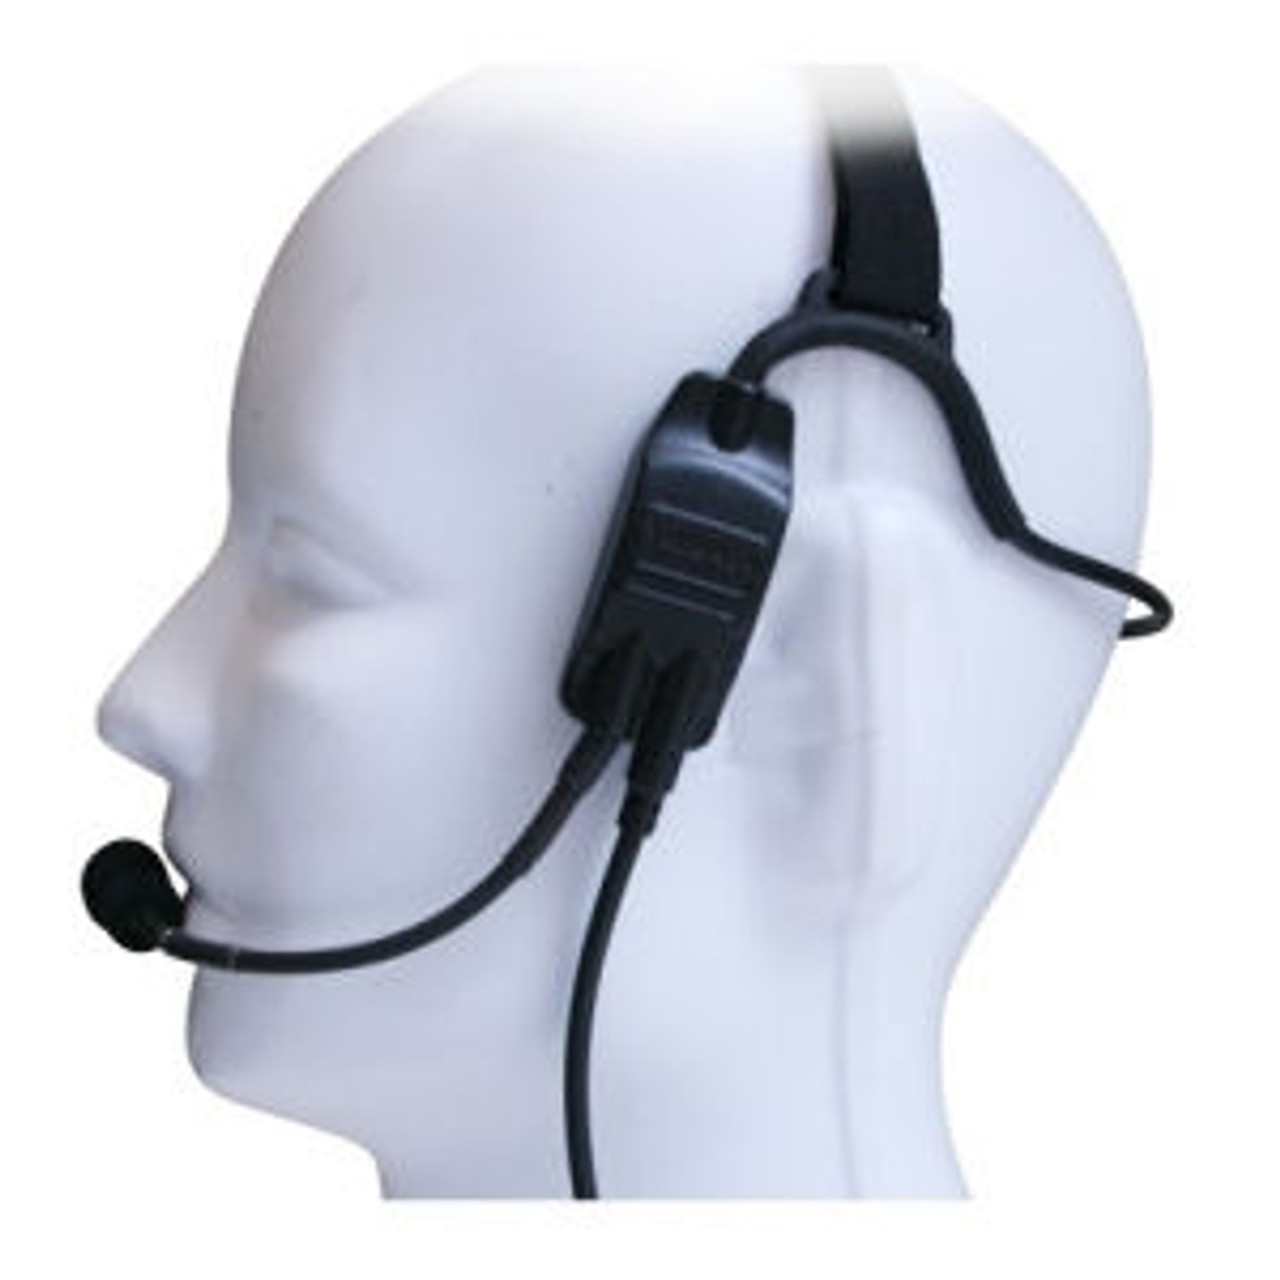 Kenwood TK-3102 Temple Transducer Headset